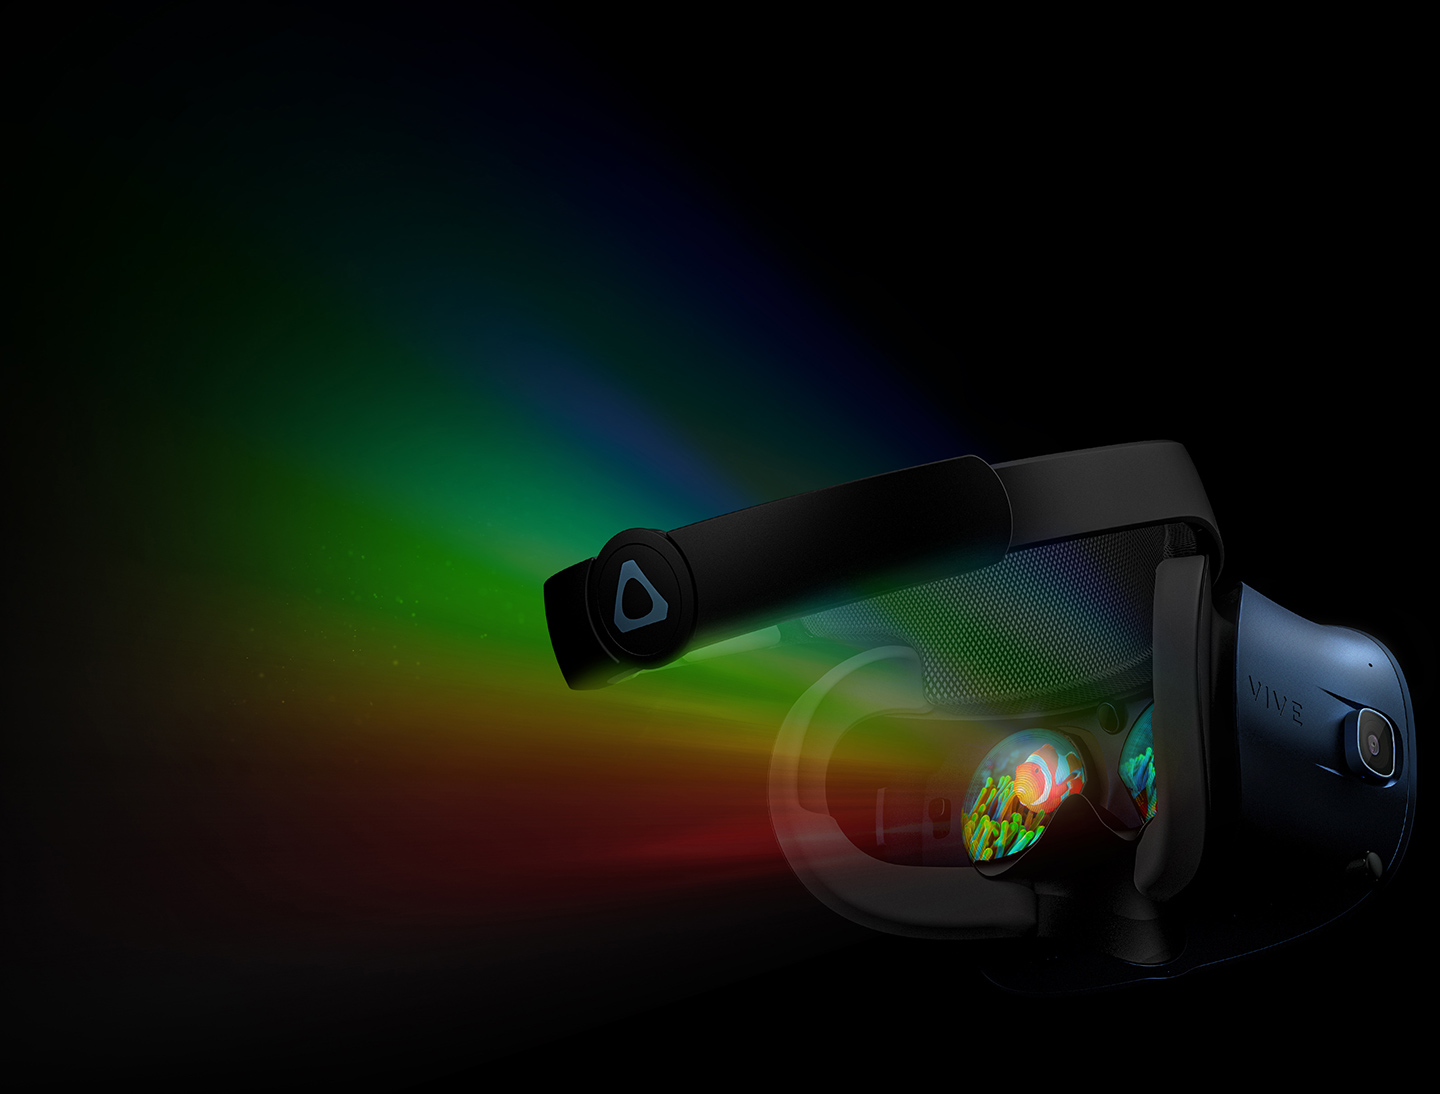 HTC Vive chính thức
giới thiệu kính thực tế ảo HTC Vive Cosmos tại Việt Nam, giá
25.490.000 đồng